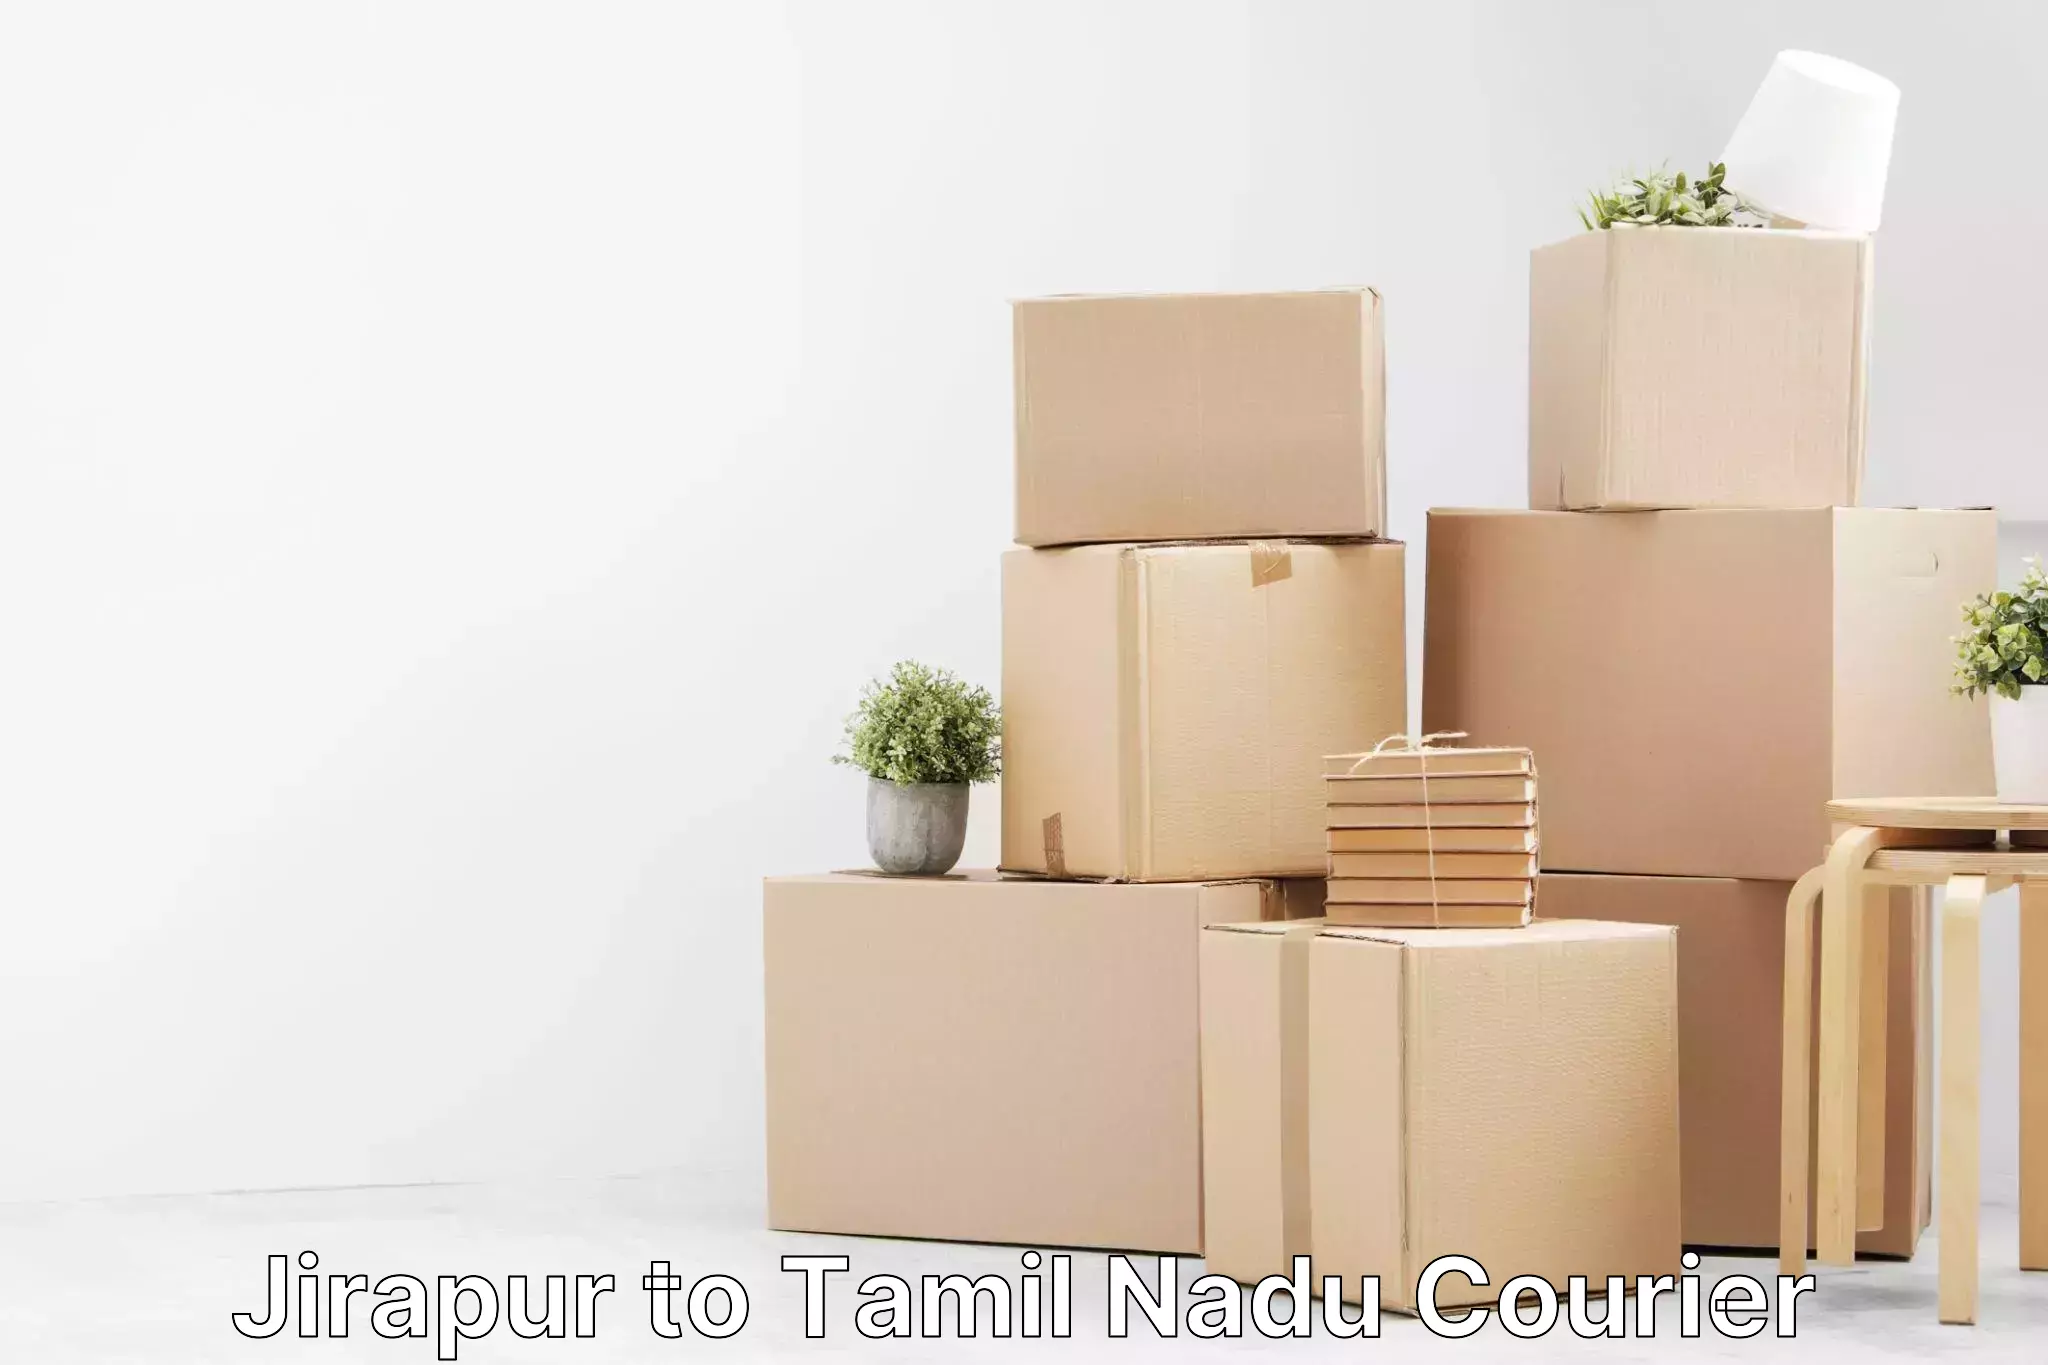 Business logistics support Jirapur to Tamil Nadu